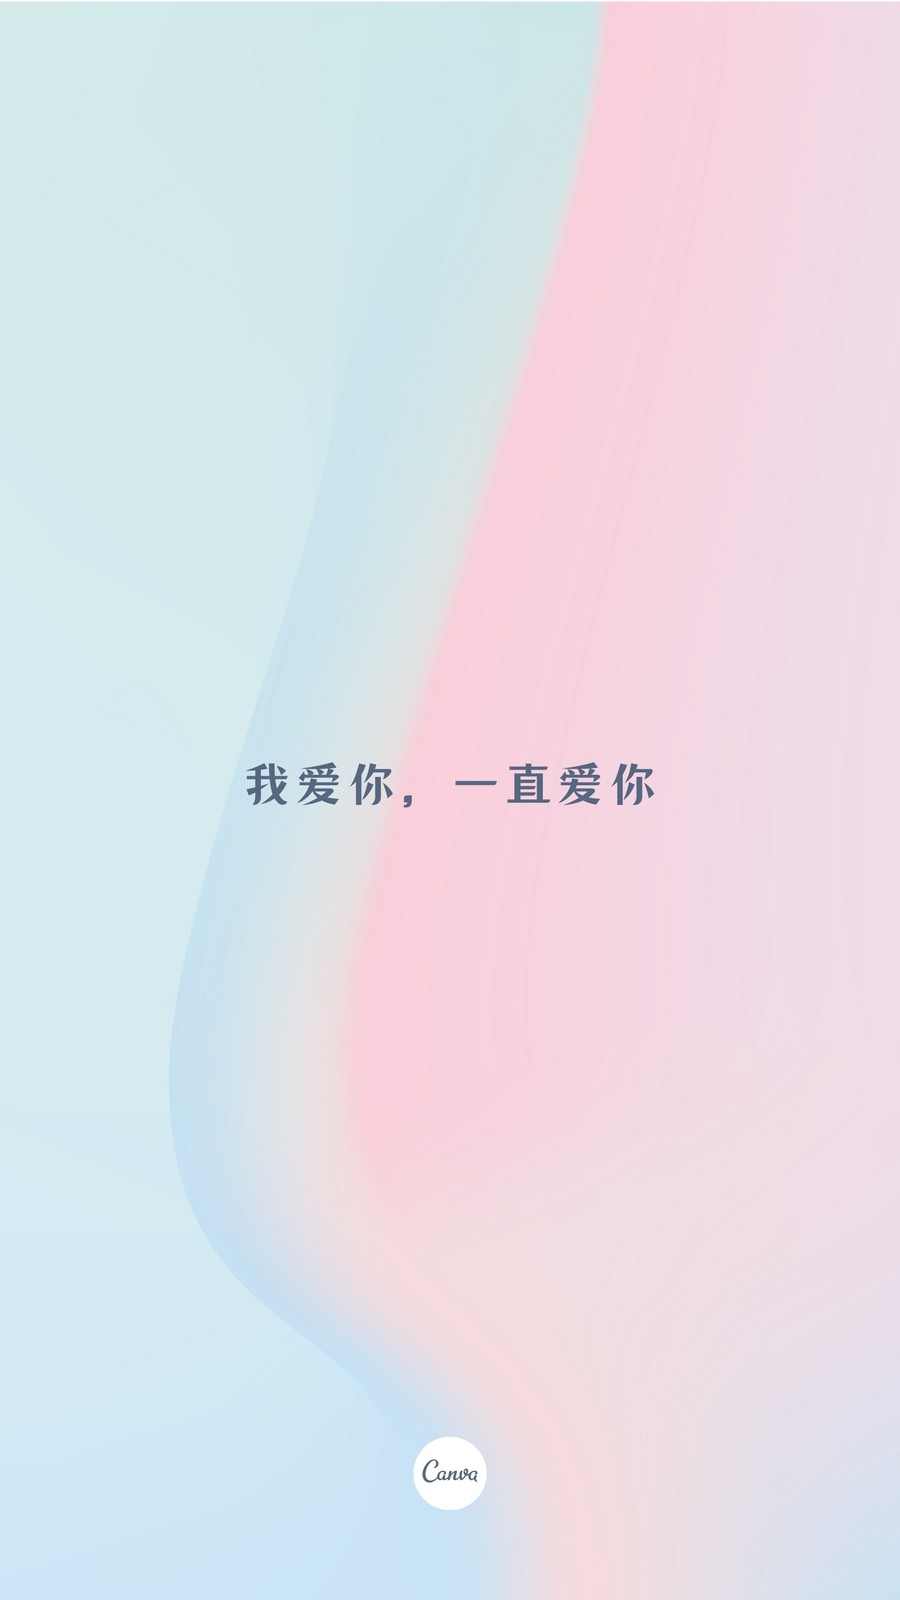 粉蓝色蓝粉渐变小清新手机壁纸字体个人分享中文手机壁纸